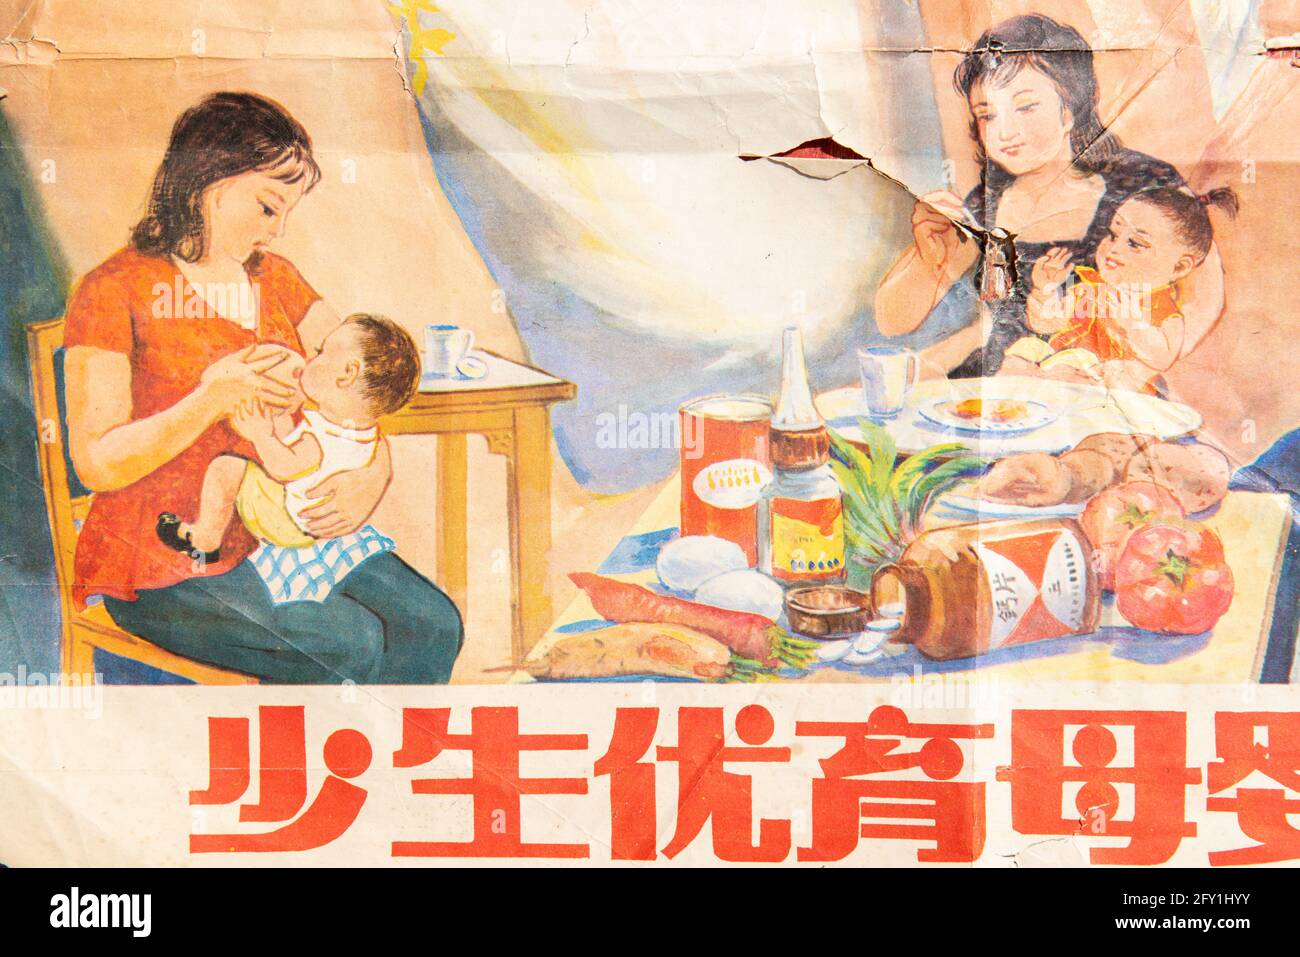 Un poster di una politica per l'infanzia in Cina negli anni '80. Caratteri cinesi significano: Meno nascite e meglio bambino, madre (sana) e bambino. Foto Stock